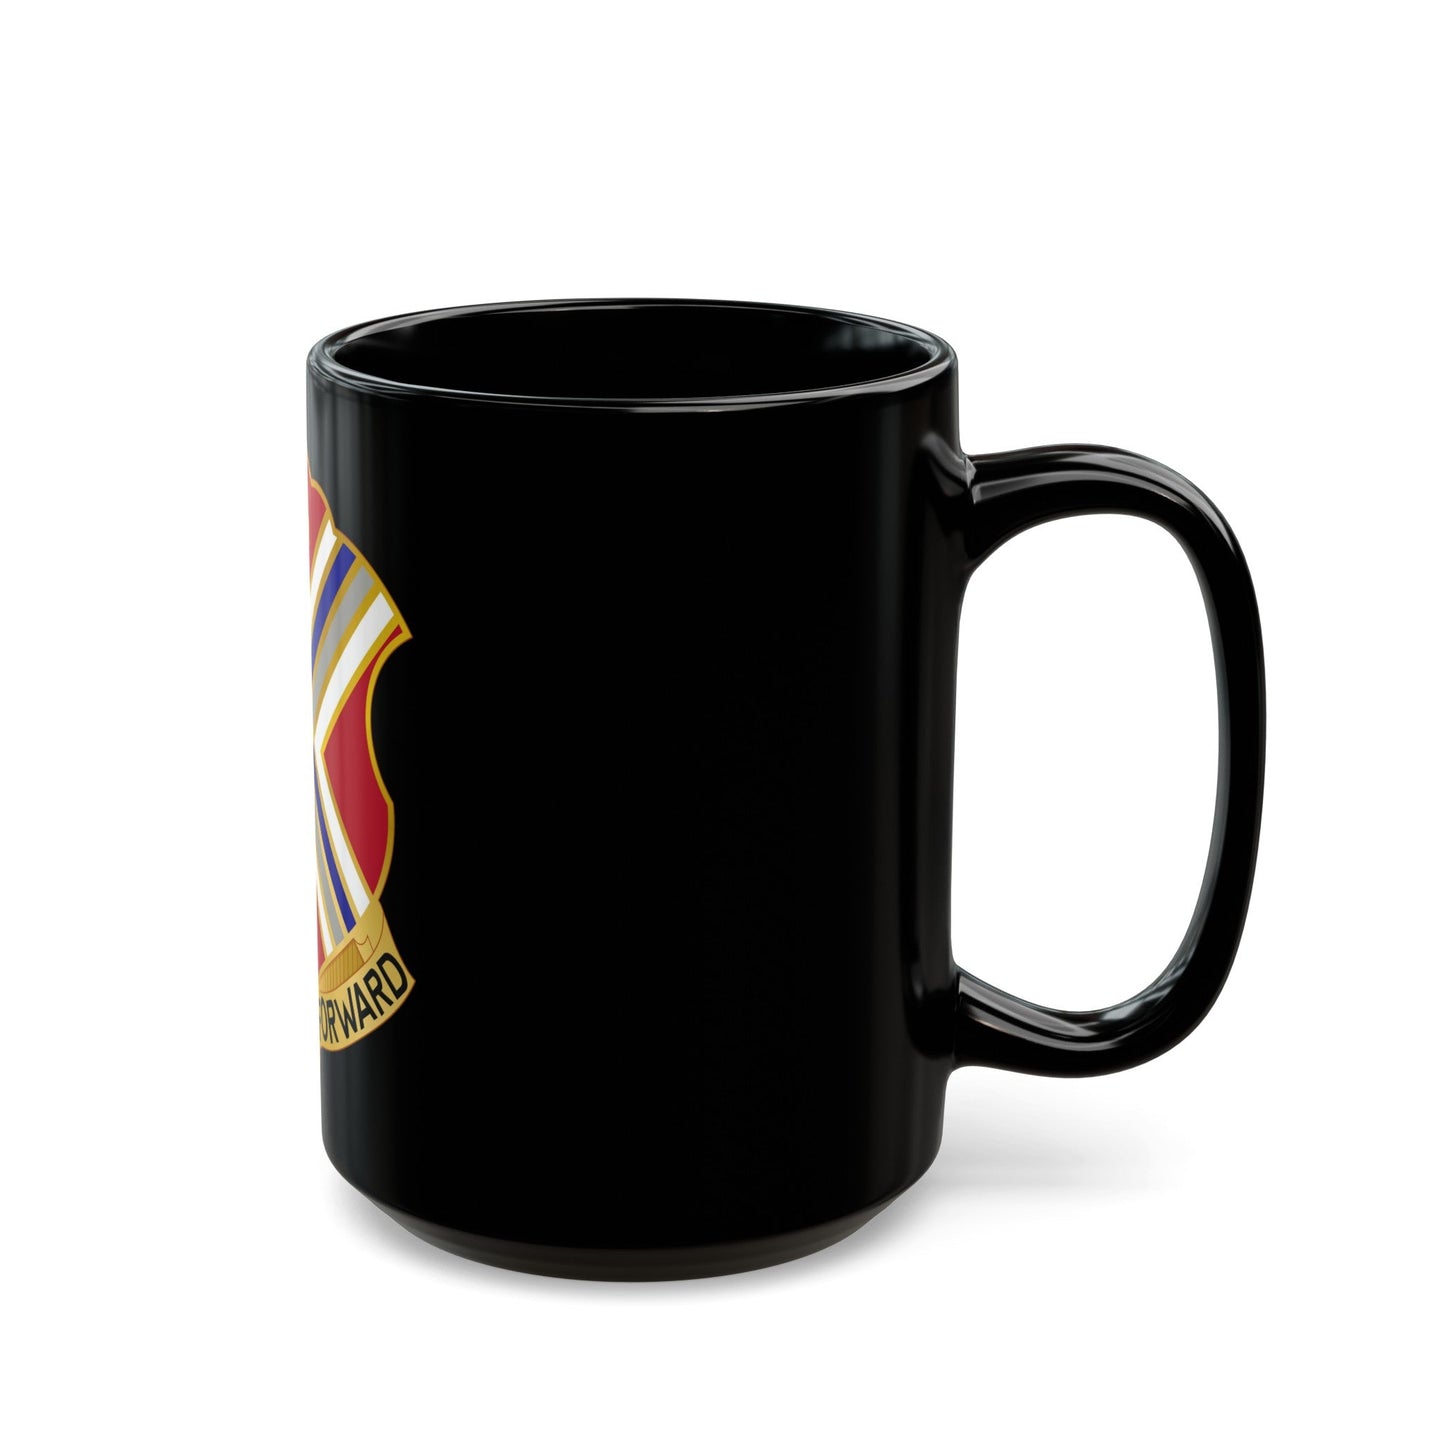 116th Infantry Regiment (U.S. Army) Black Coffee Mug